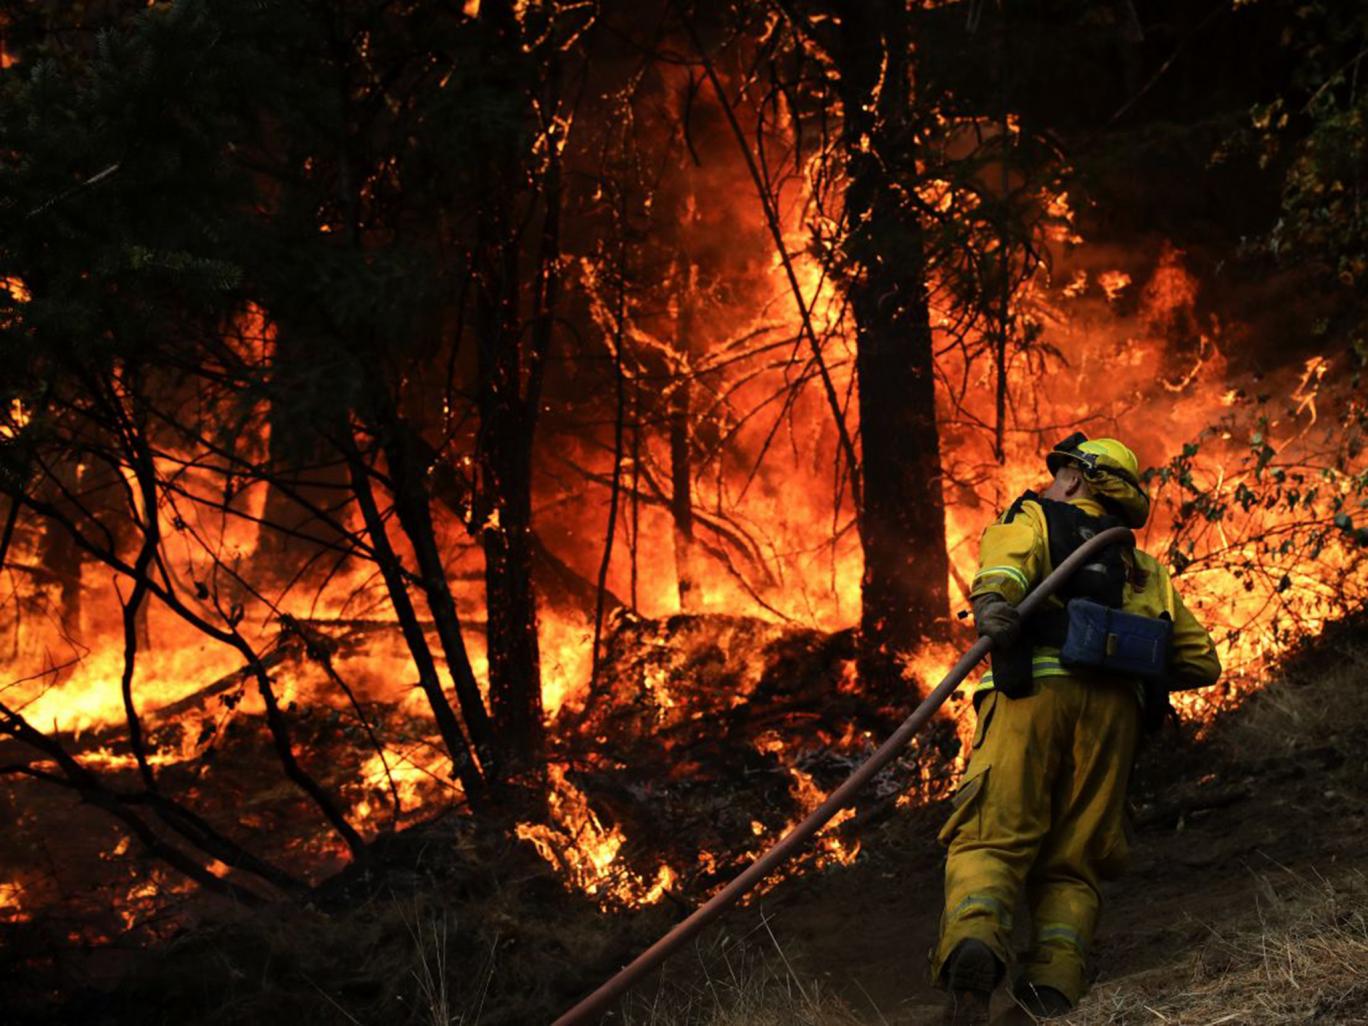 Τους 33 έχουν φτάσει οι νεκροί από τις πυρκαγιές στην Καλιφόρνια - Περίπου 5.700 σπίτια και καταστήματα έχουν καταστραφεί